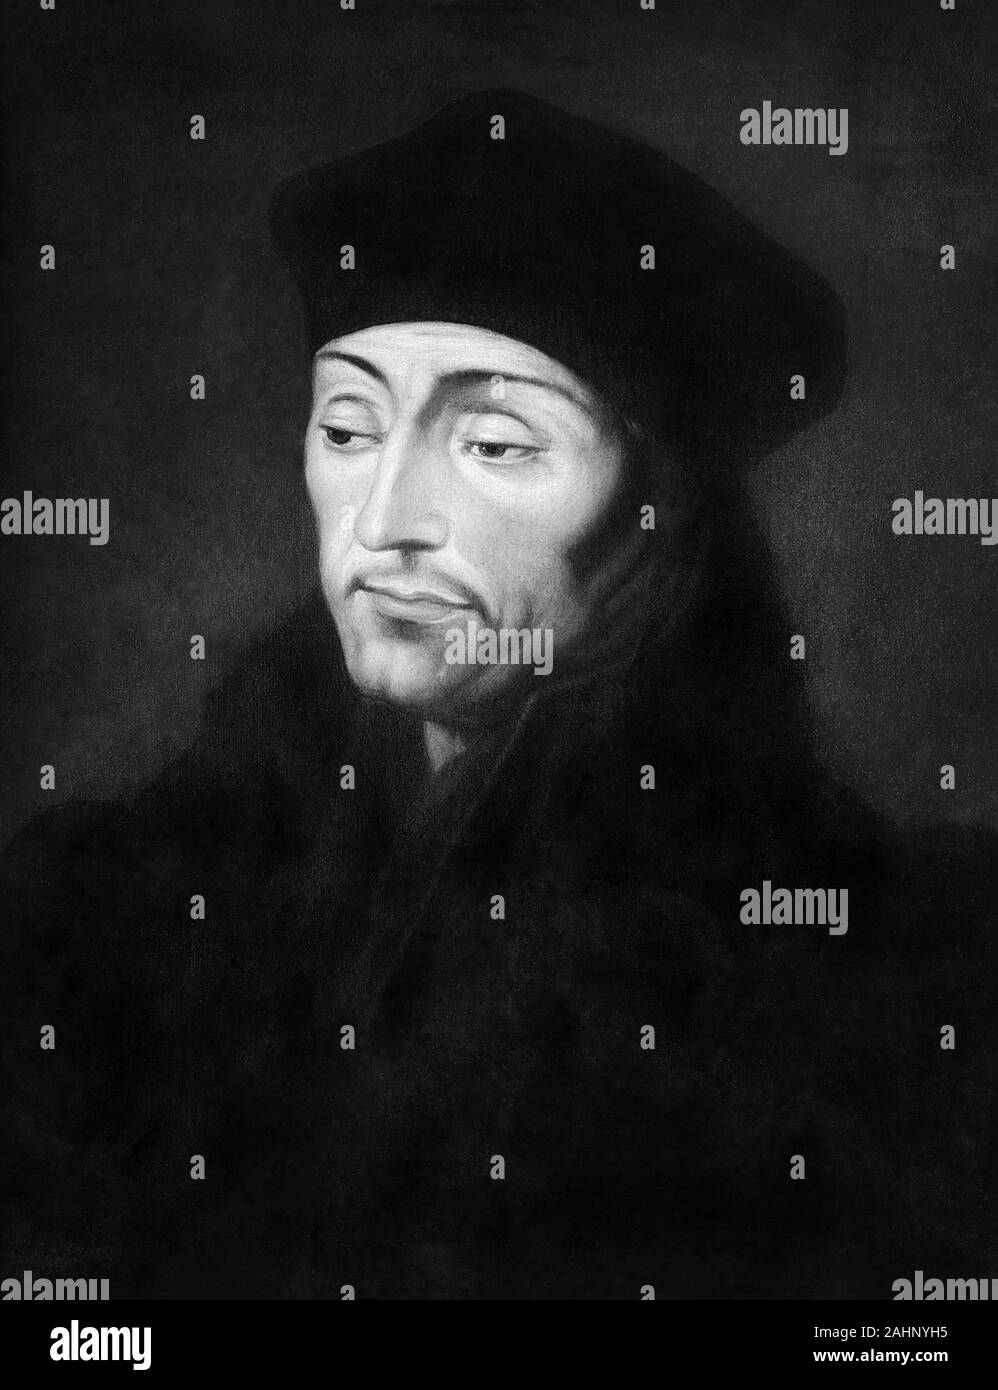 Desiderio Roterodamus Erasmus (1466-1536), di solito indicato come Erasmo da Rotterdam o semplicemente il programma Erasmus è stato un filosofo olandese, la Bibbia traduttore, e umanista cristiana ampiamente considerato uno dei maggiori studiosi del nord del Rinascimento. Foto Stock